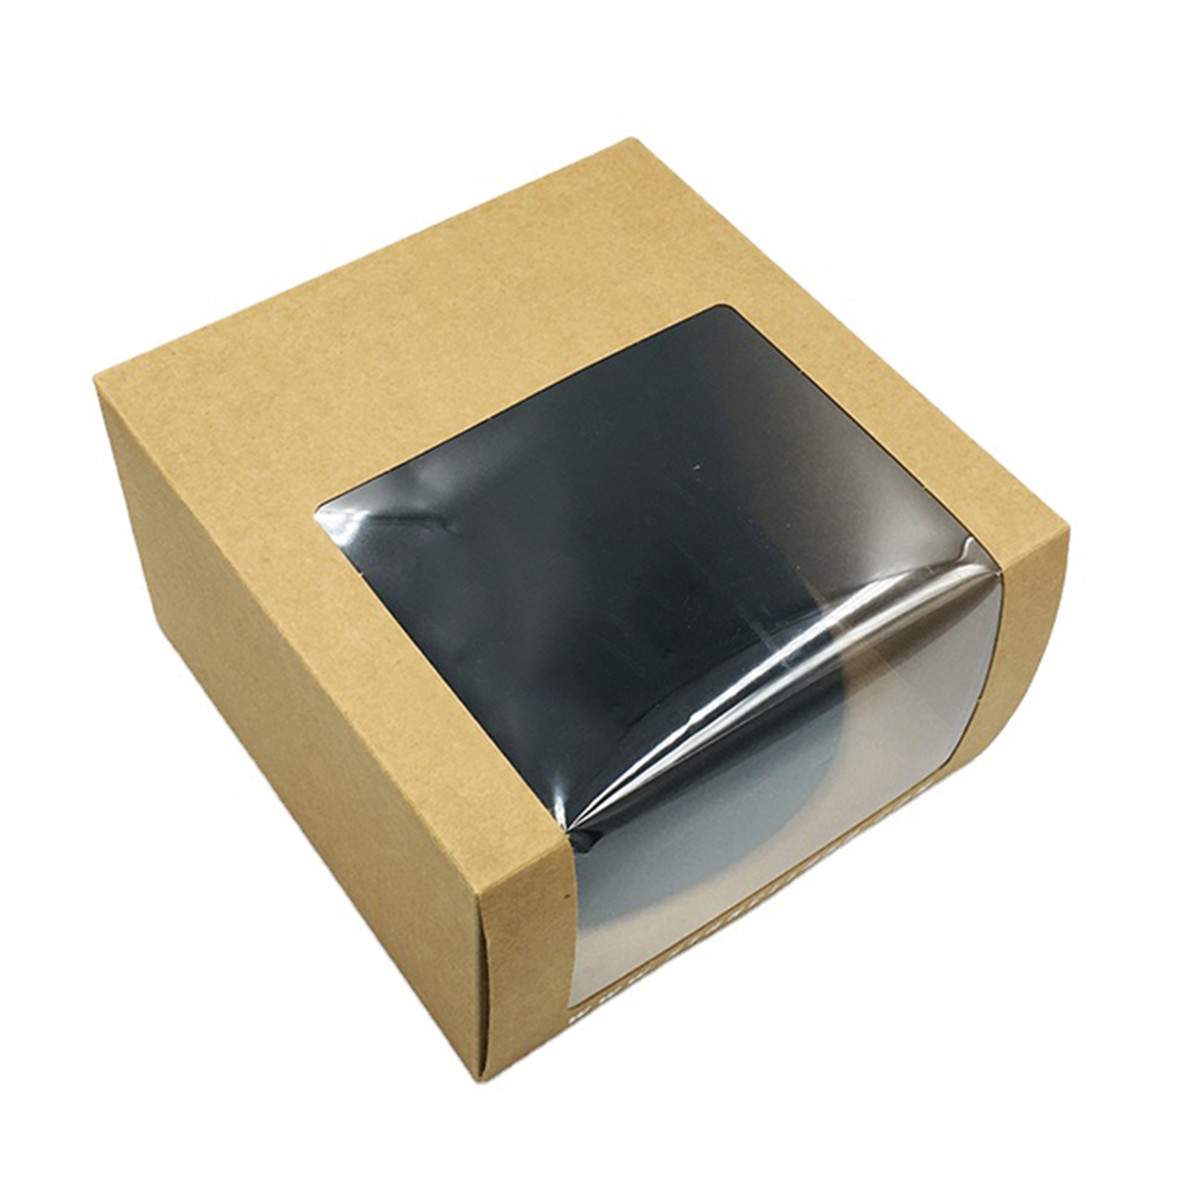 PVC विन्डोको साथ थोक कस्टम मुद्रित ढुवानी प्याकेजिङ ह्याट स्न्यापब्याक पेपर बक्स (8)